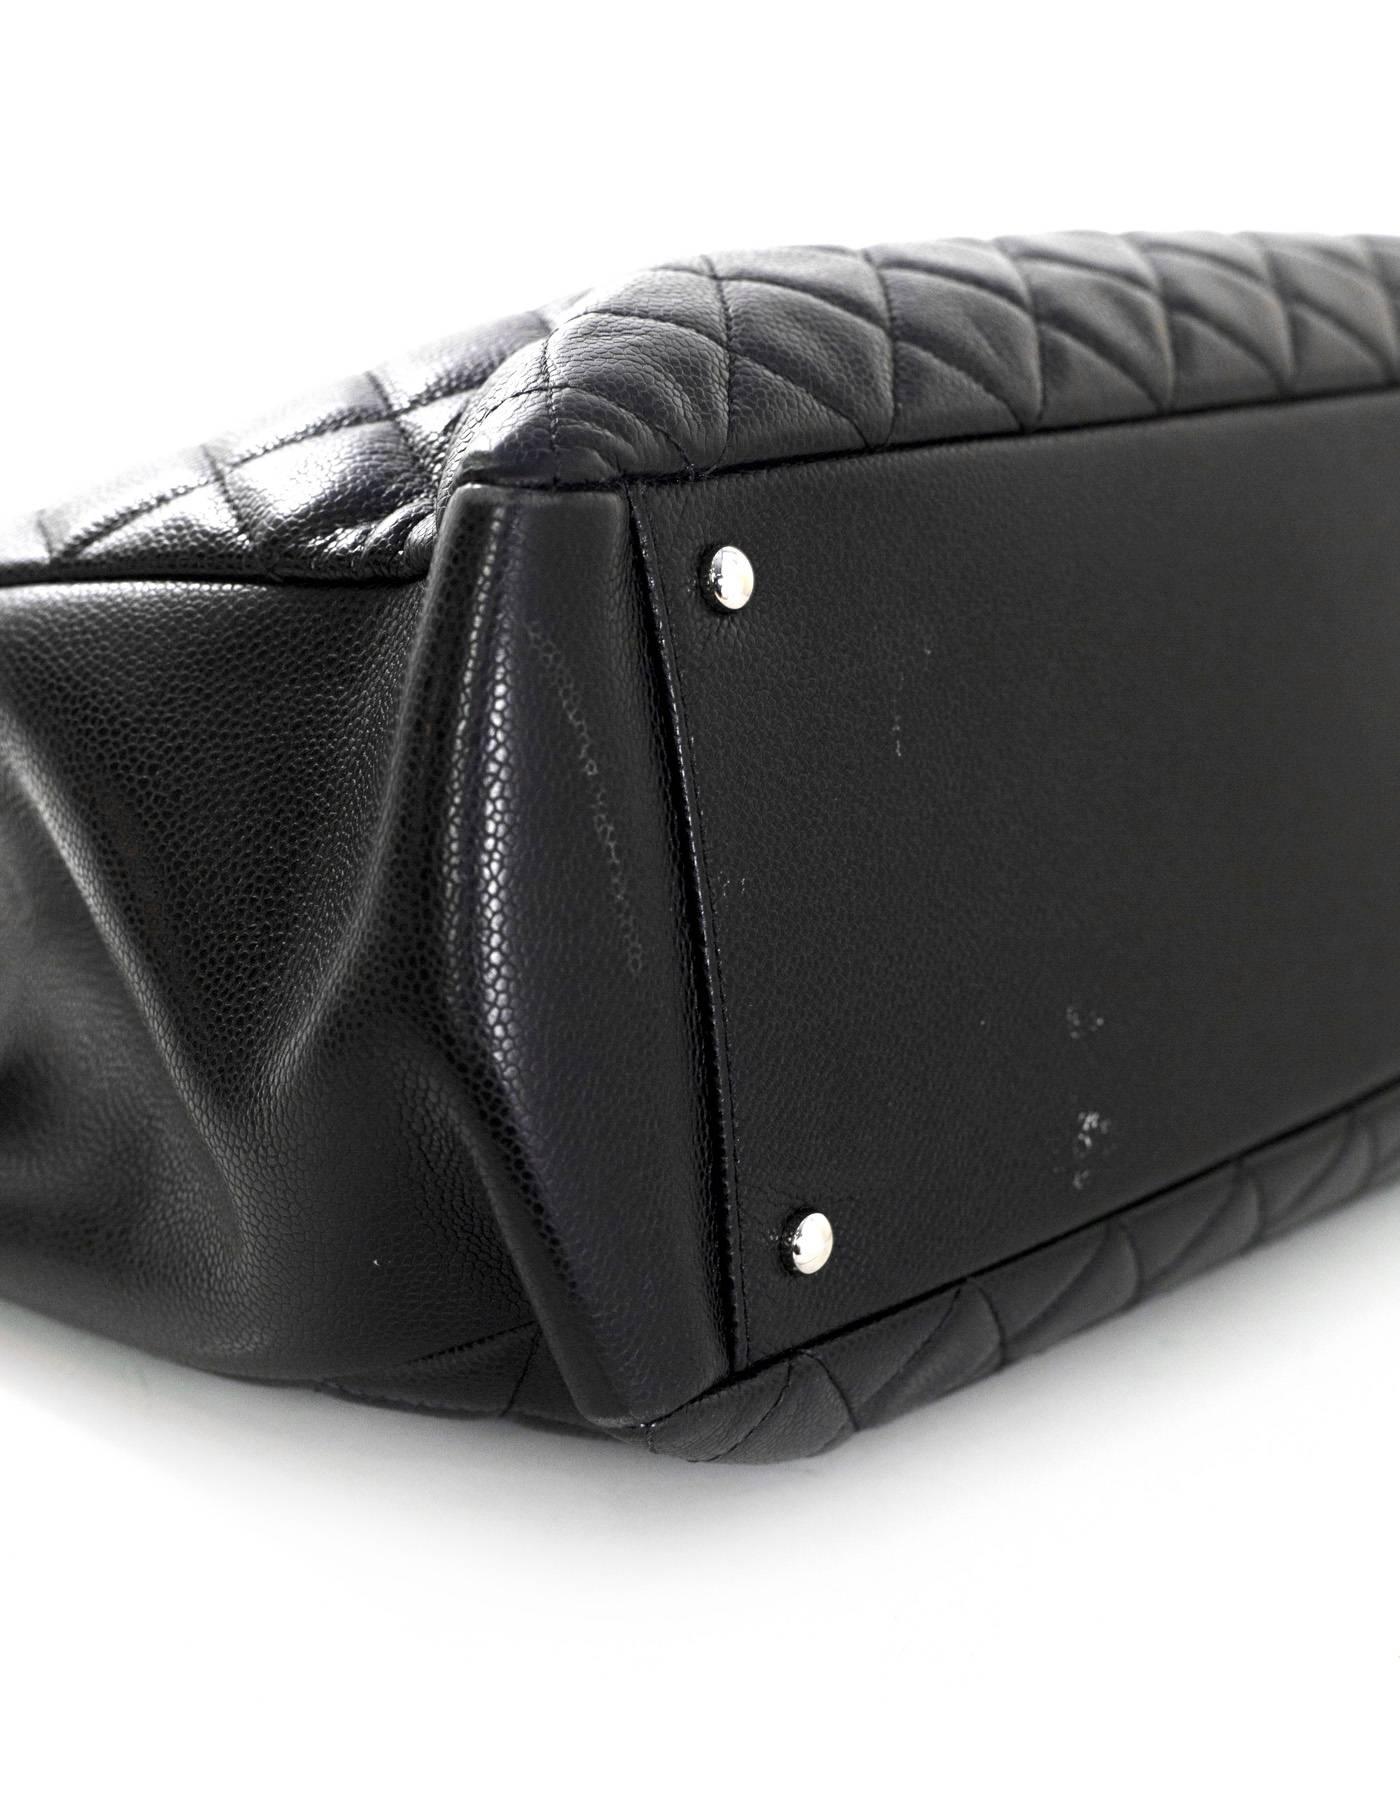 Chanel Black Caviar Leather XL Grand Shopper Tote GST Bag 1